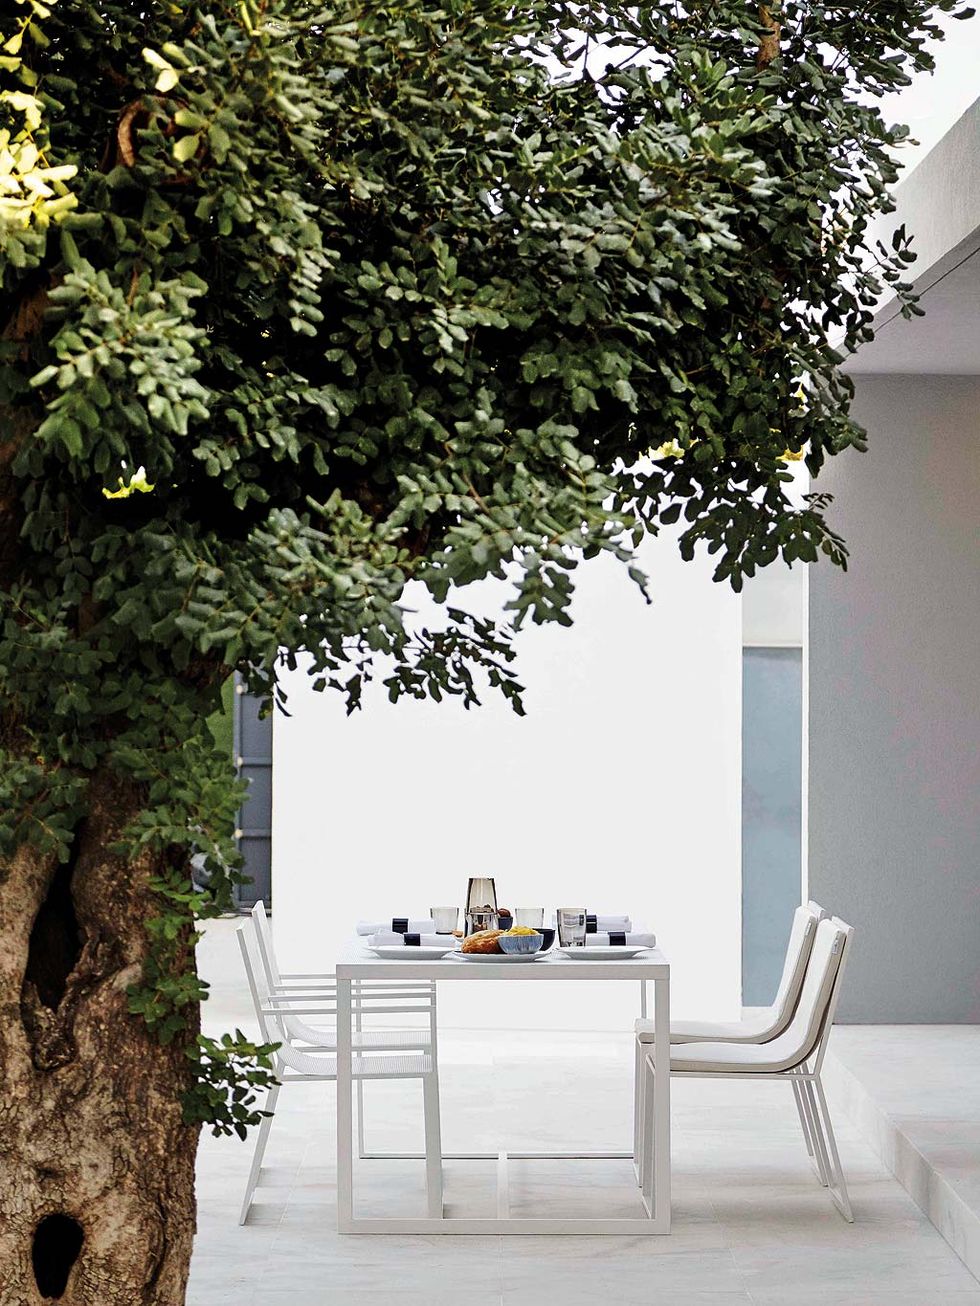 15 muebles que cambiarán el ambiente y la decoración de tu terraza